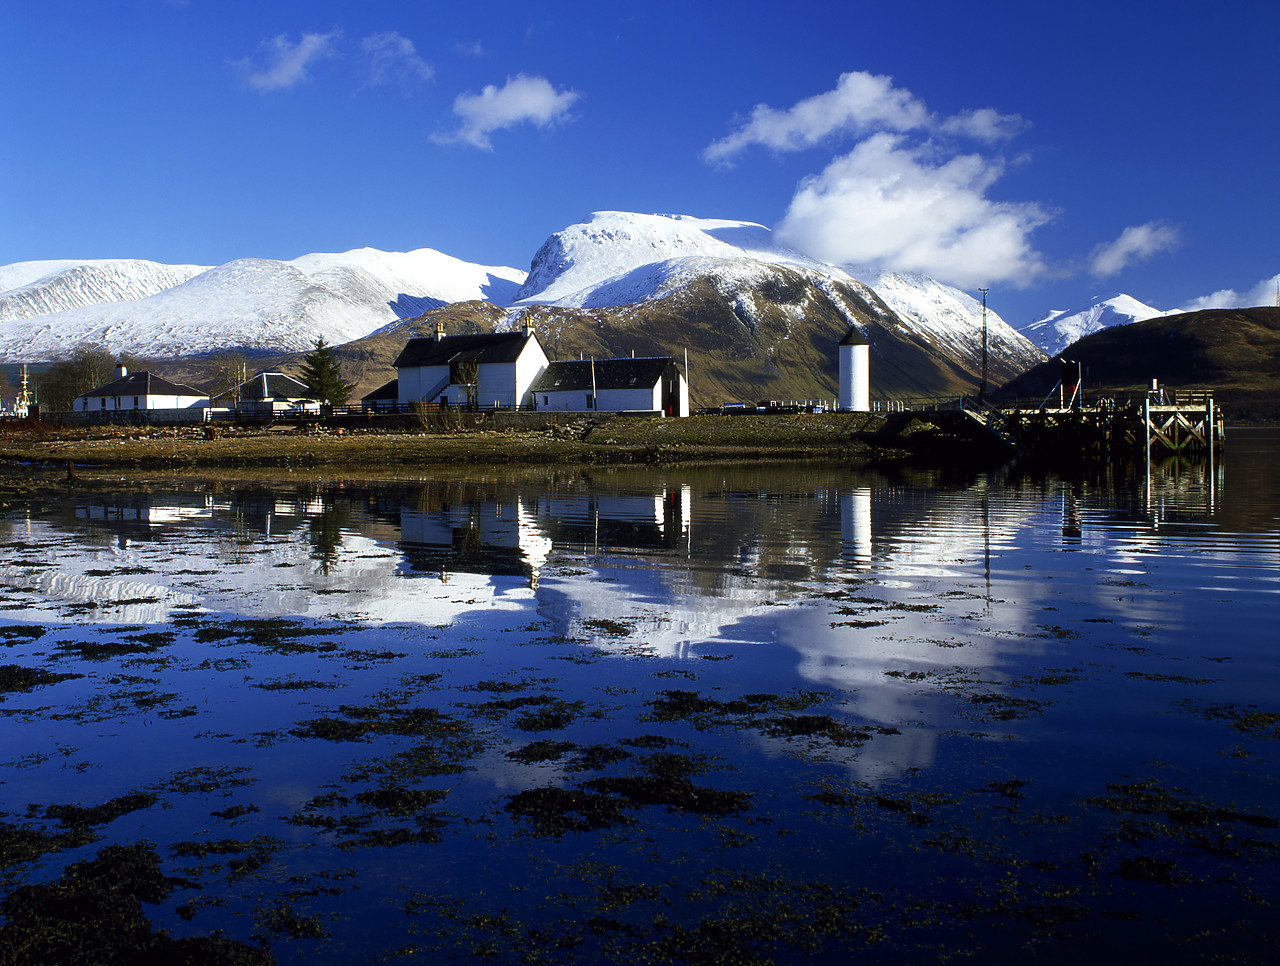 #020081-1 - Ben Nevis Reflecting in Loch Eil, Corpach, Highland Region, Scotland